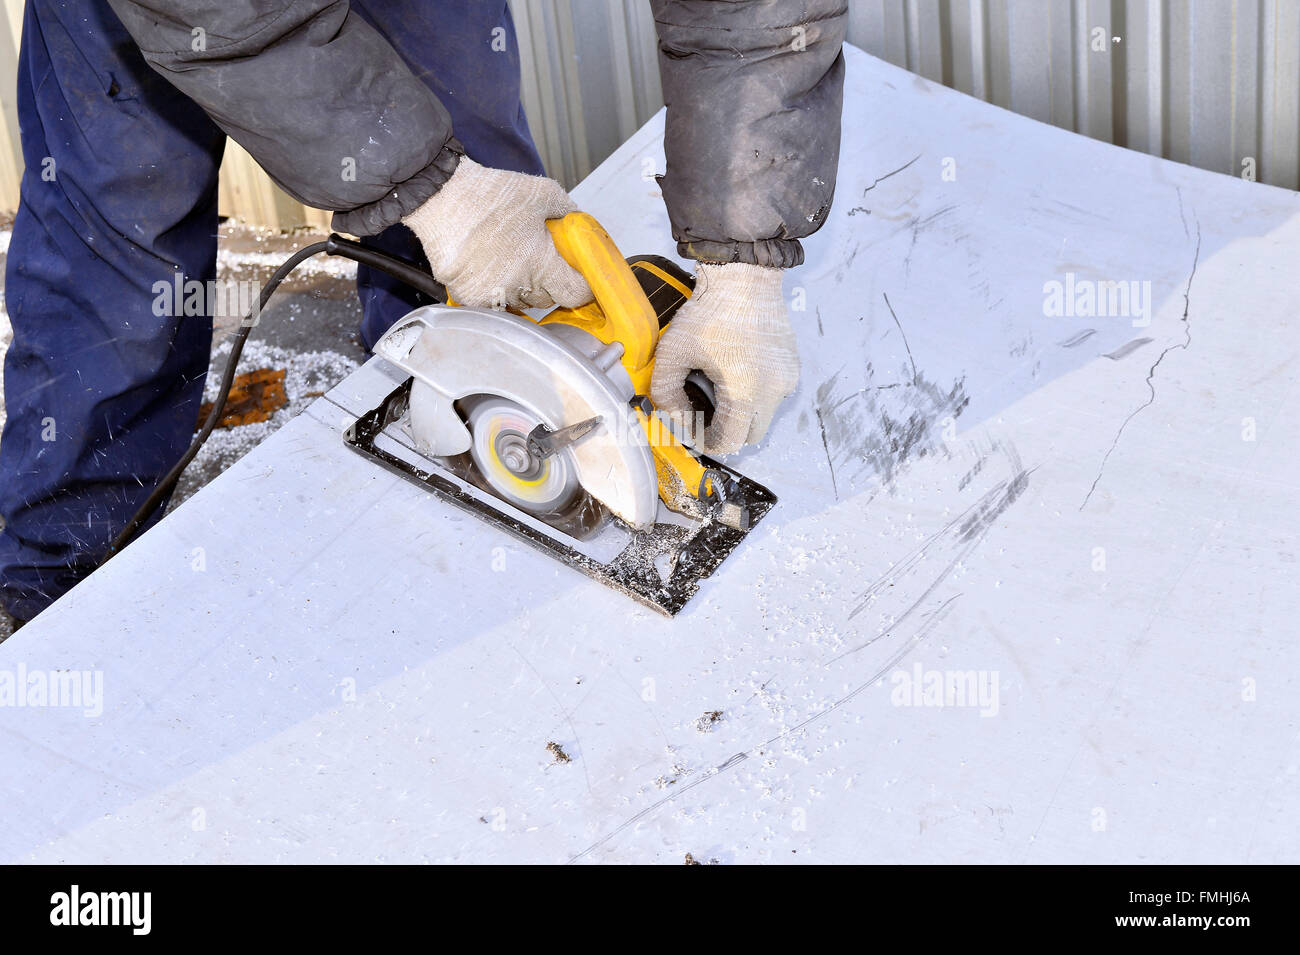 Herramienta eléctrica de mano en manos del trabajador, cortando hoja de metal. Foto de stock